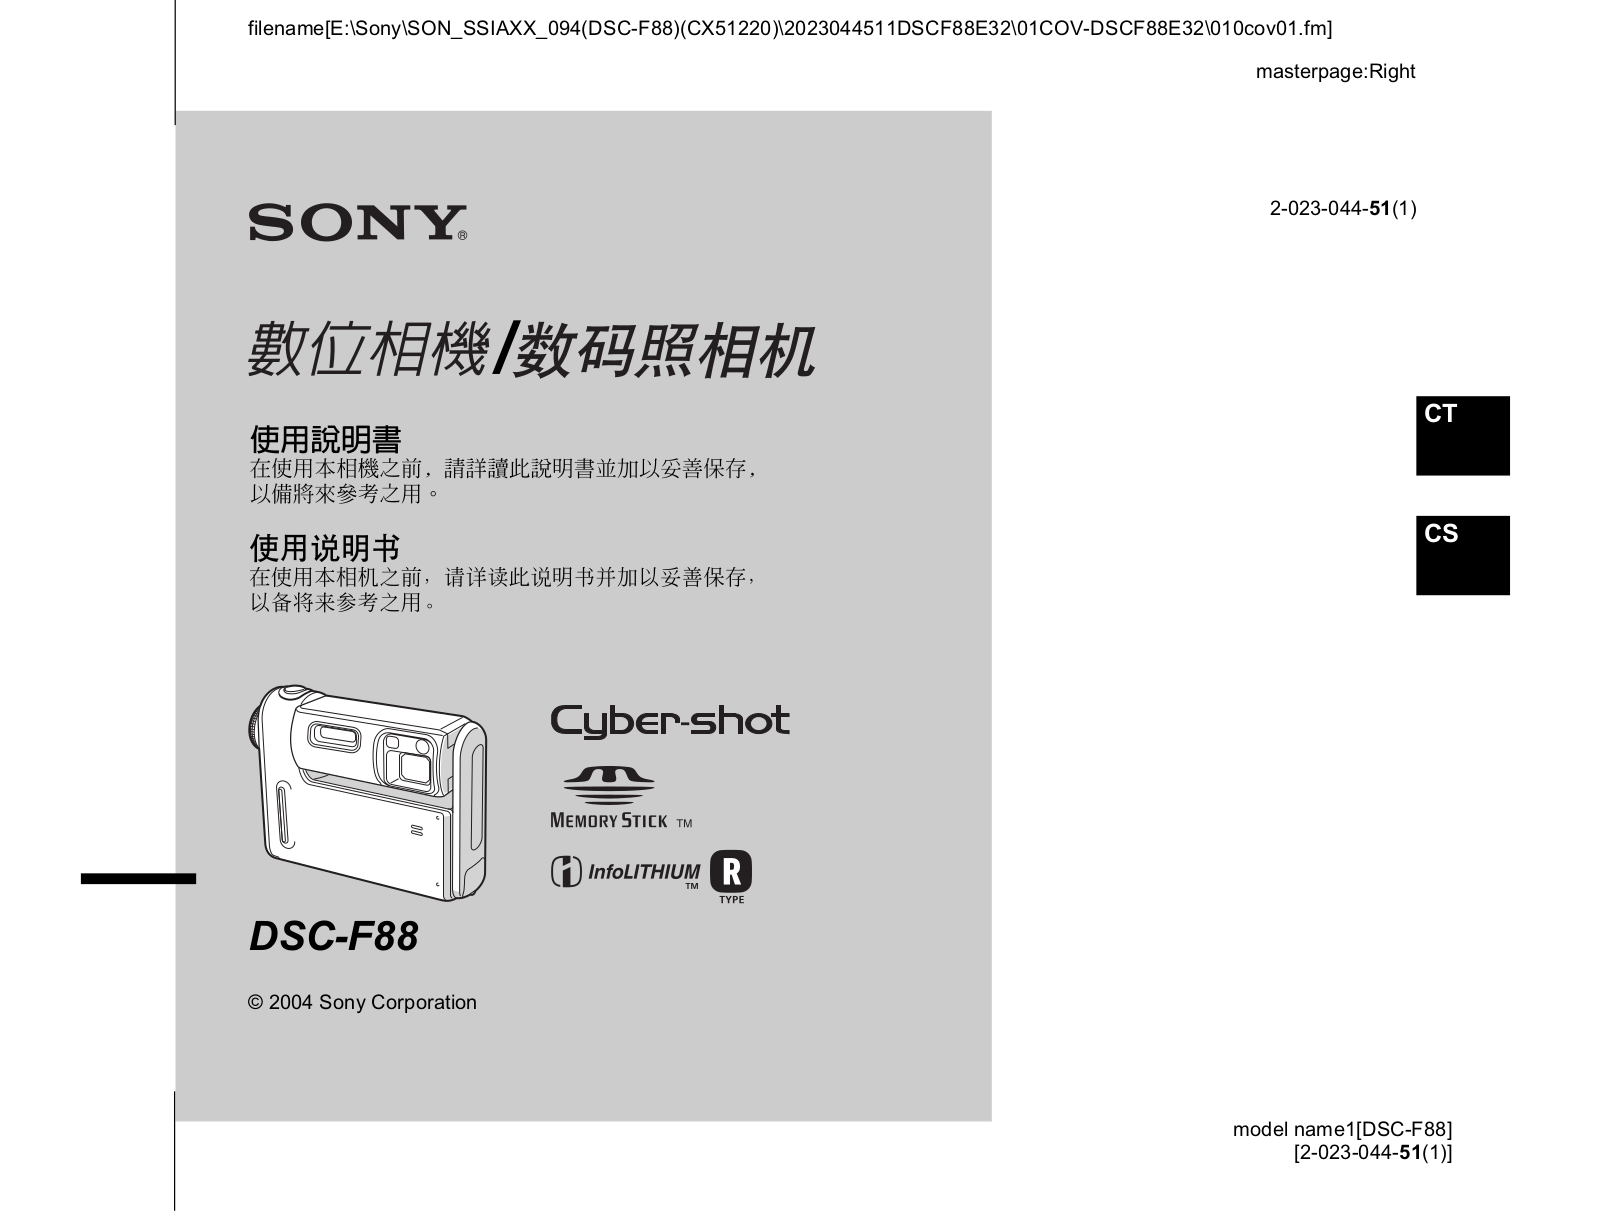 Sony CYBER-SHOT DSC-F88 User Manual